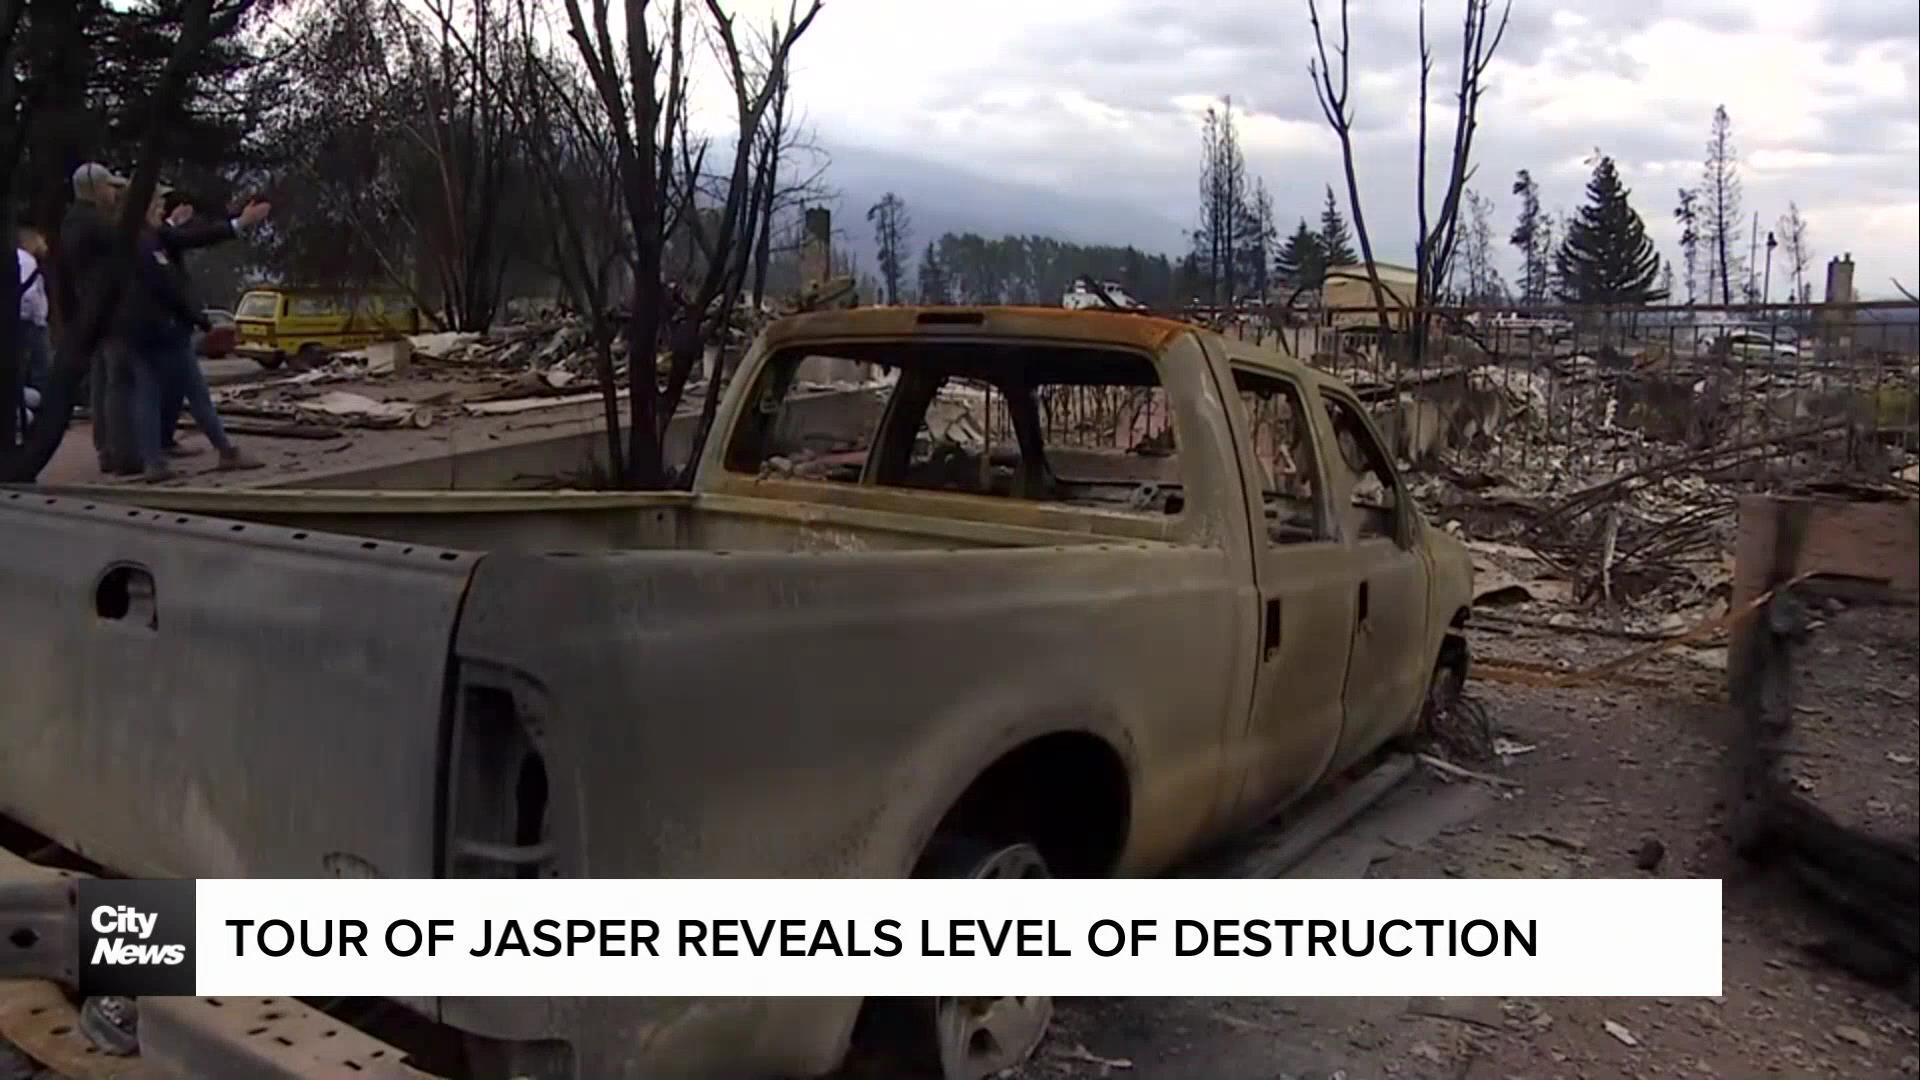 Tour of Jasper reveals level of destruction